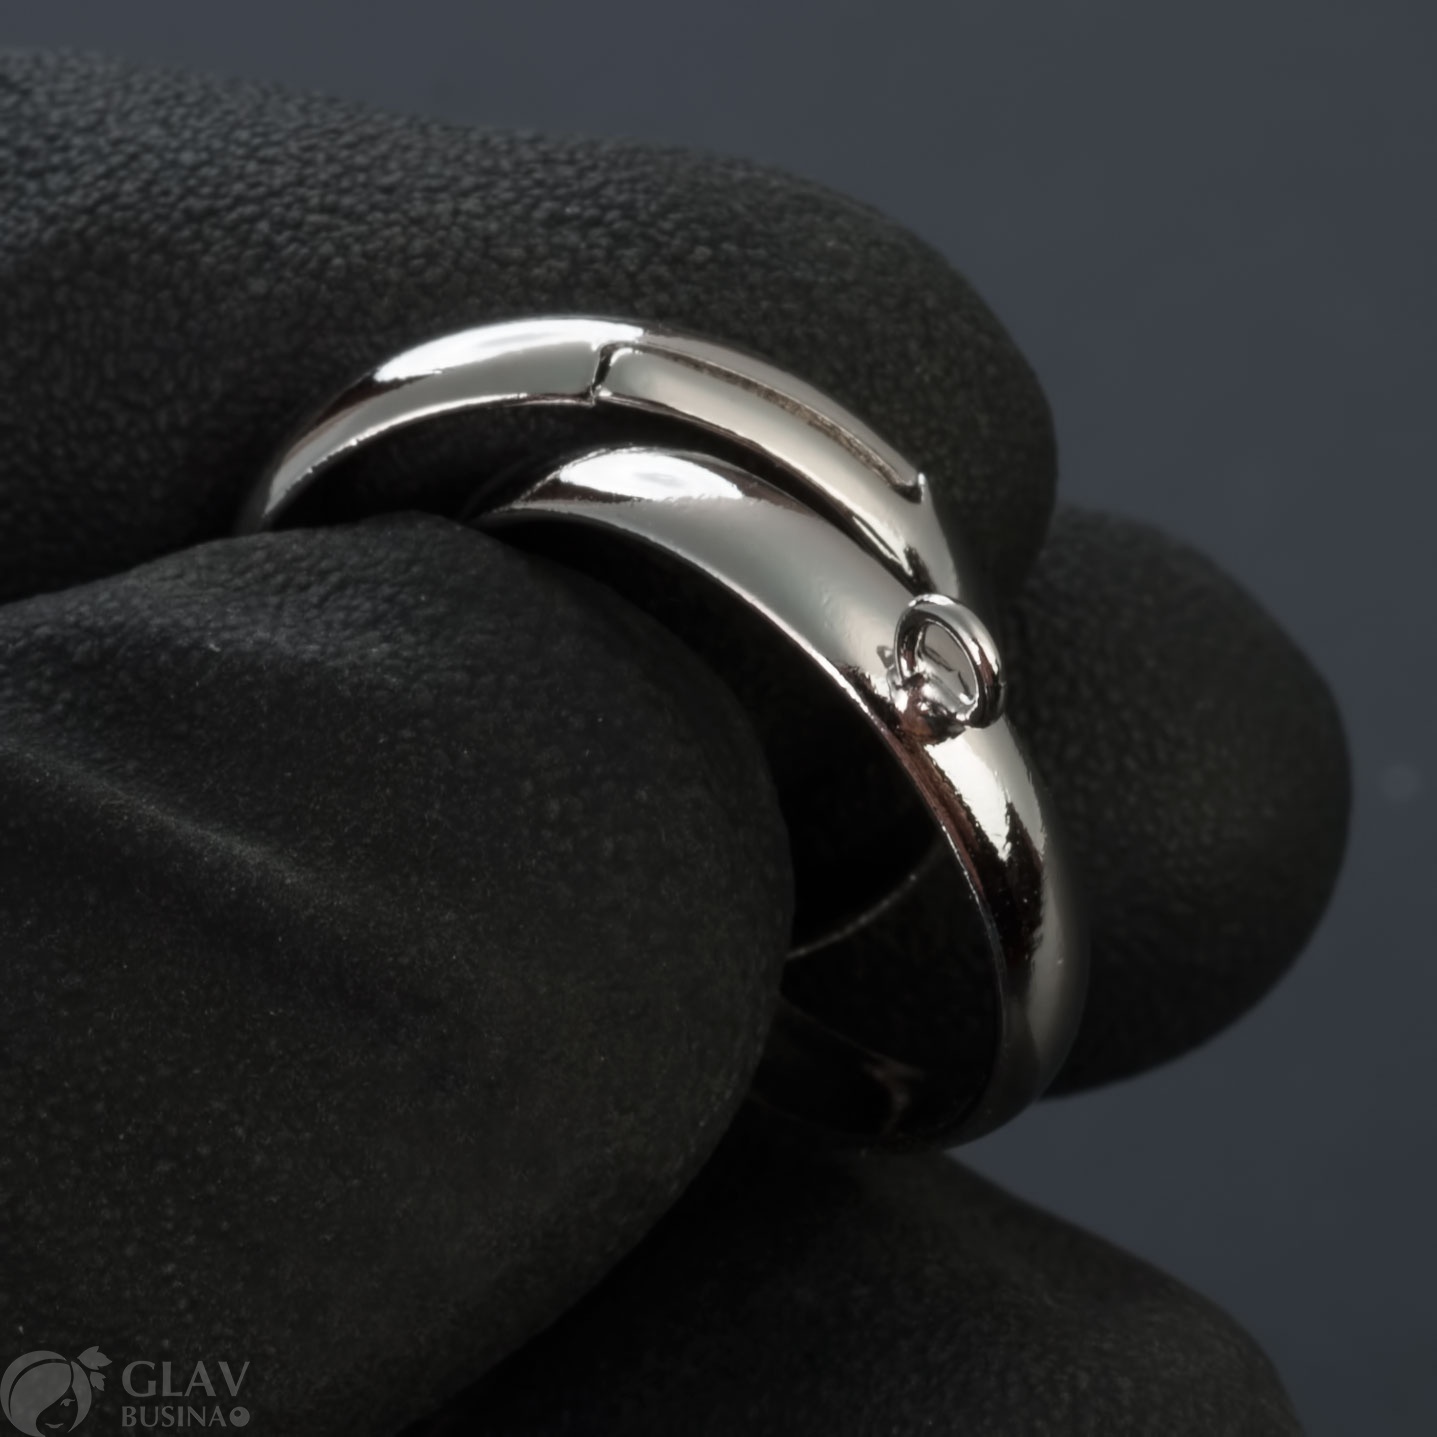 Латунная основа для кольца на 1 петельку, регулируемый размер, цвет платина. Отличное кольцо с внутренним диаметром 17мм.